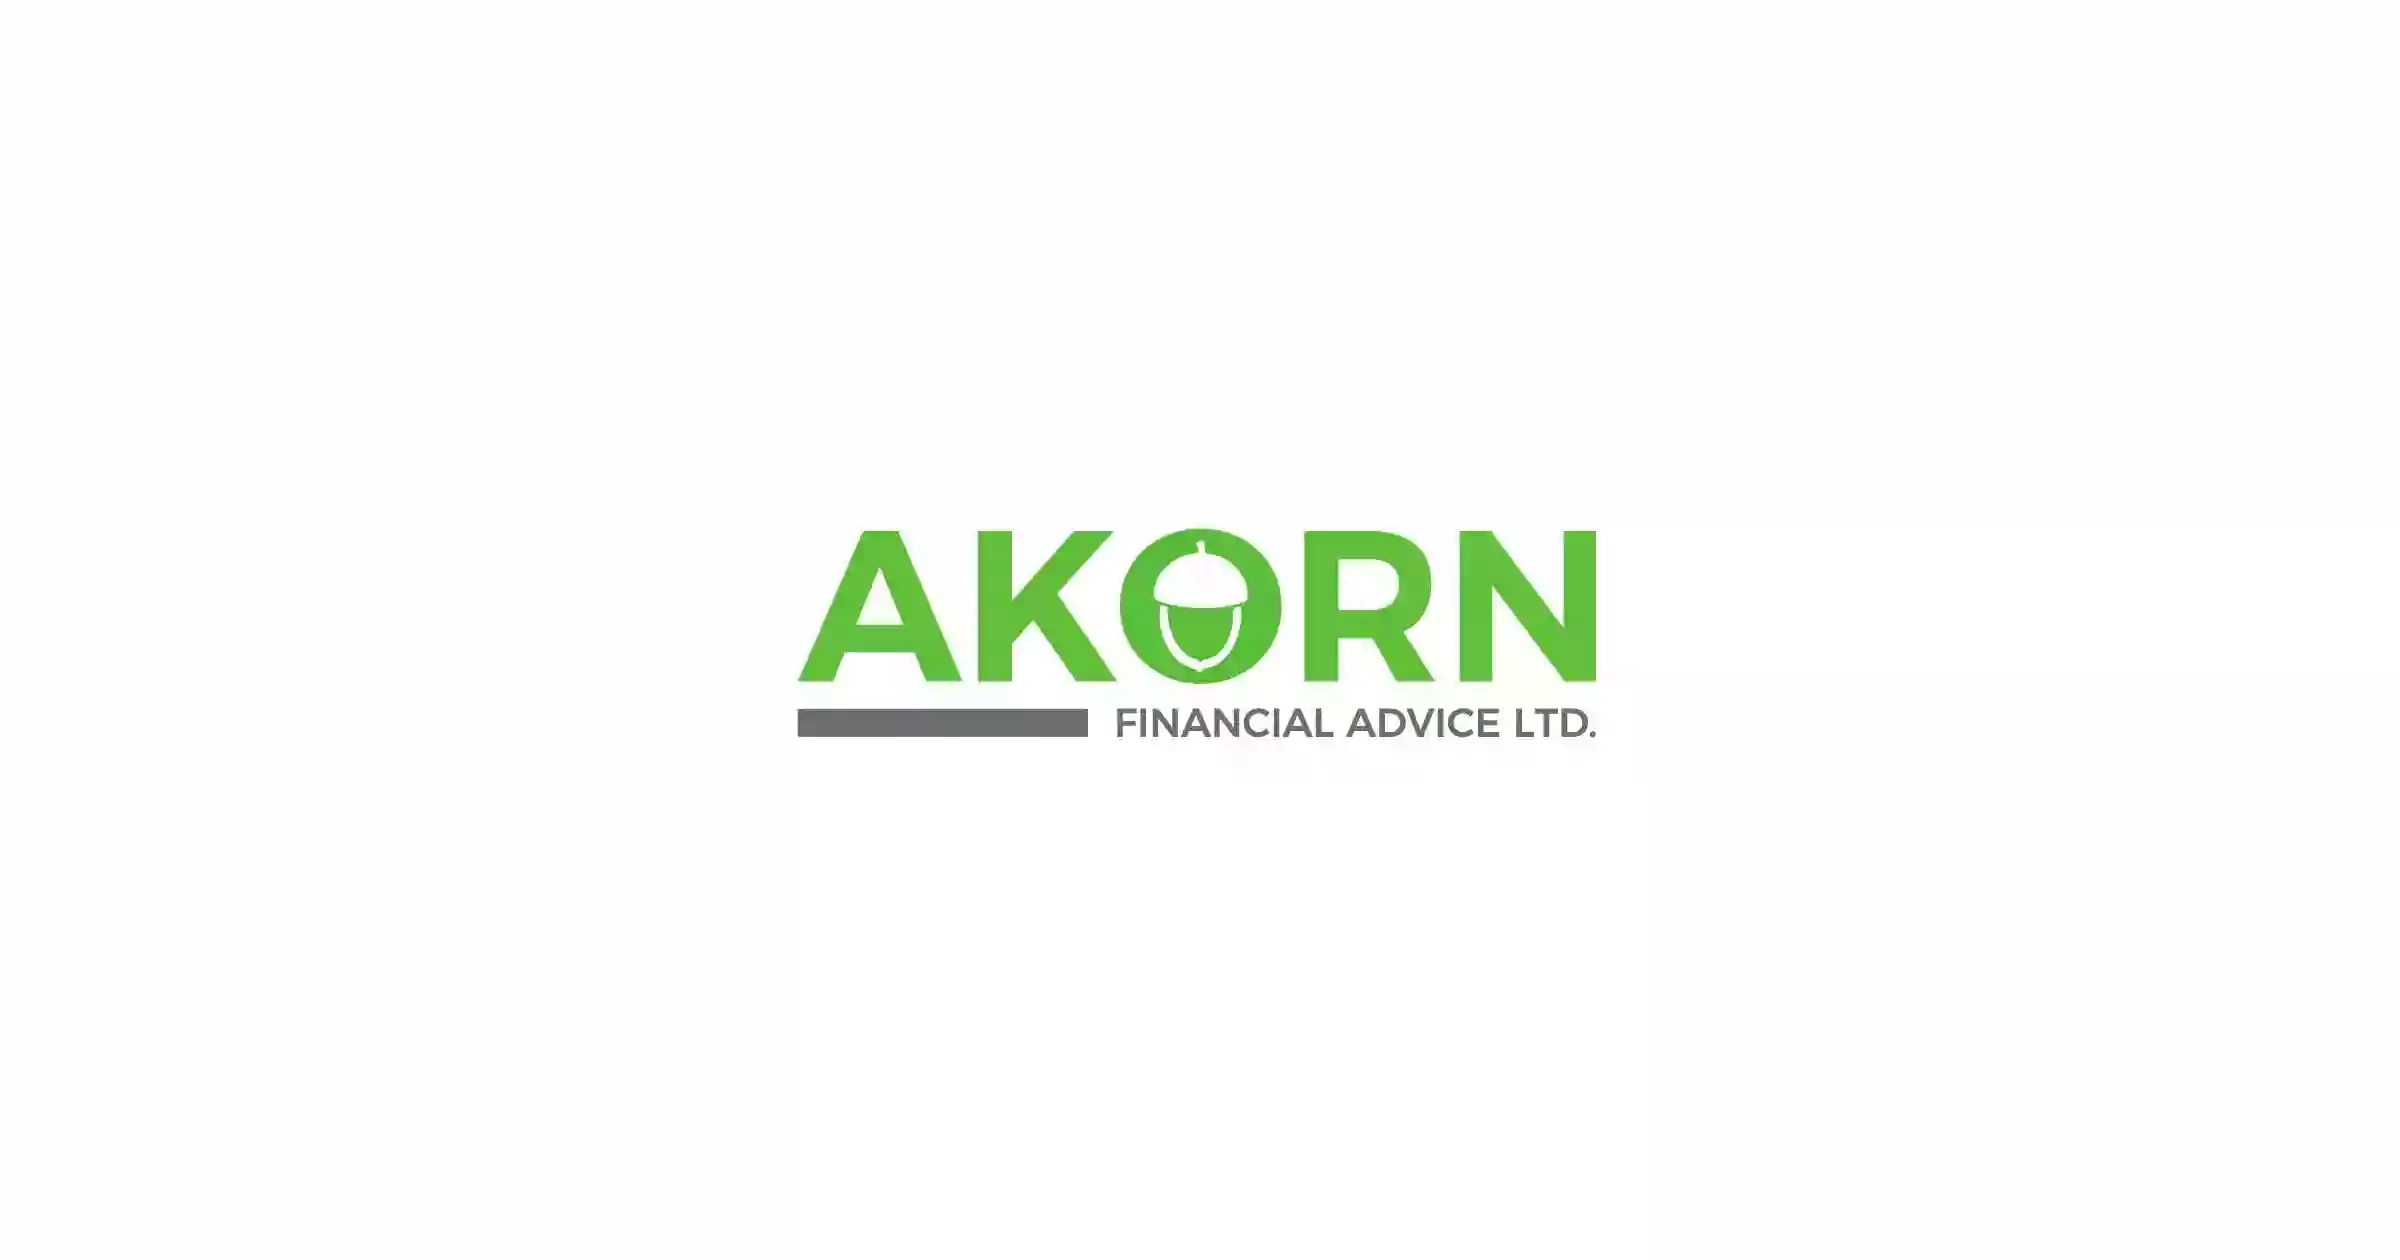 AKORN Financial Advice Ltd